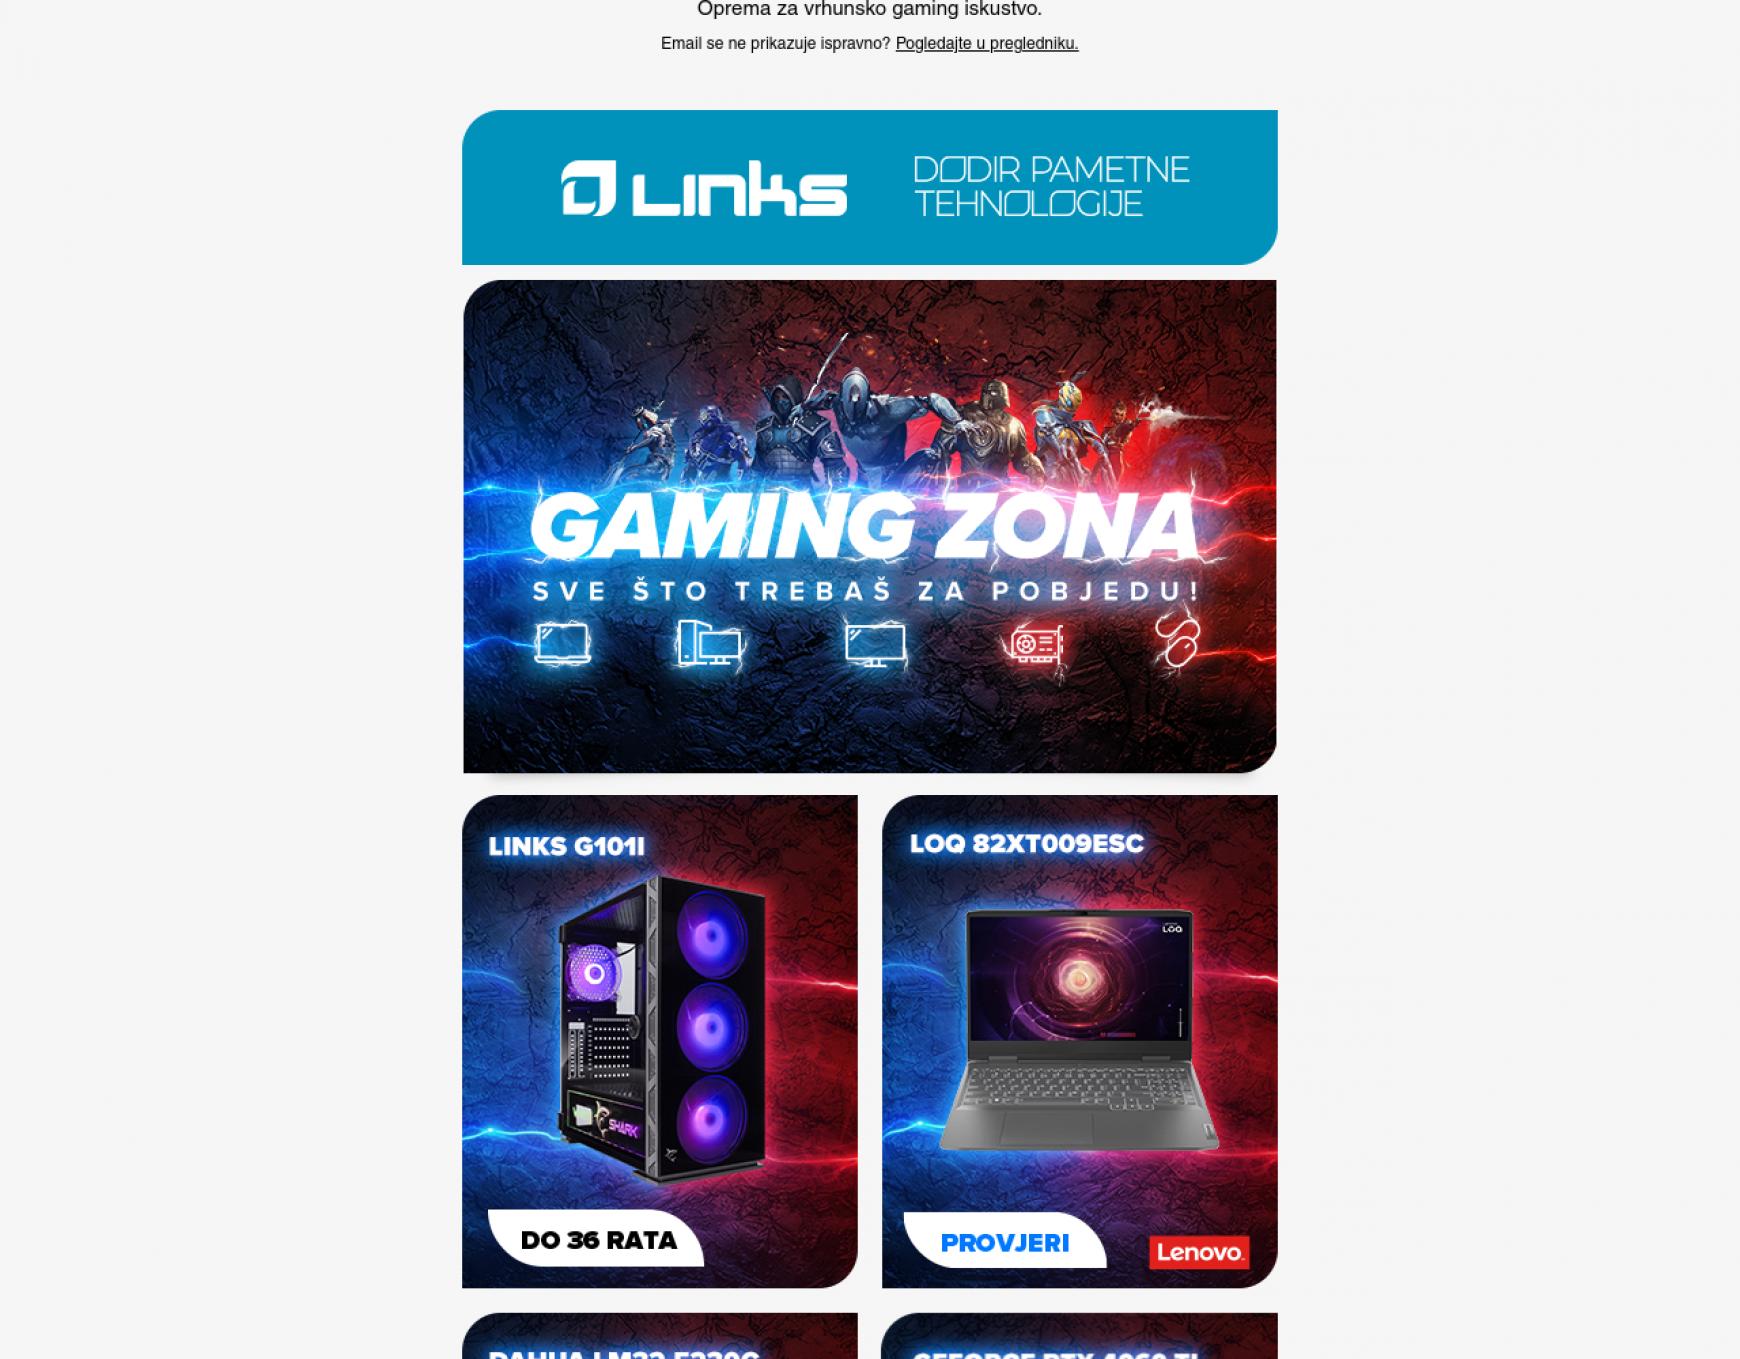 links - Links - Samo u Linksu! Dahua LM32-E230C gaming monitor. - page: 1